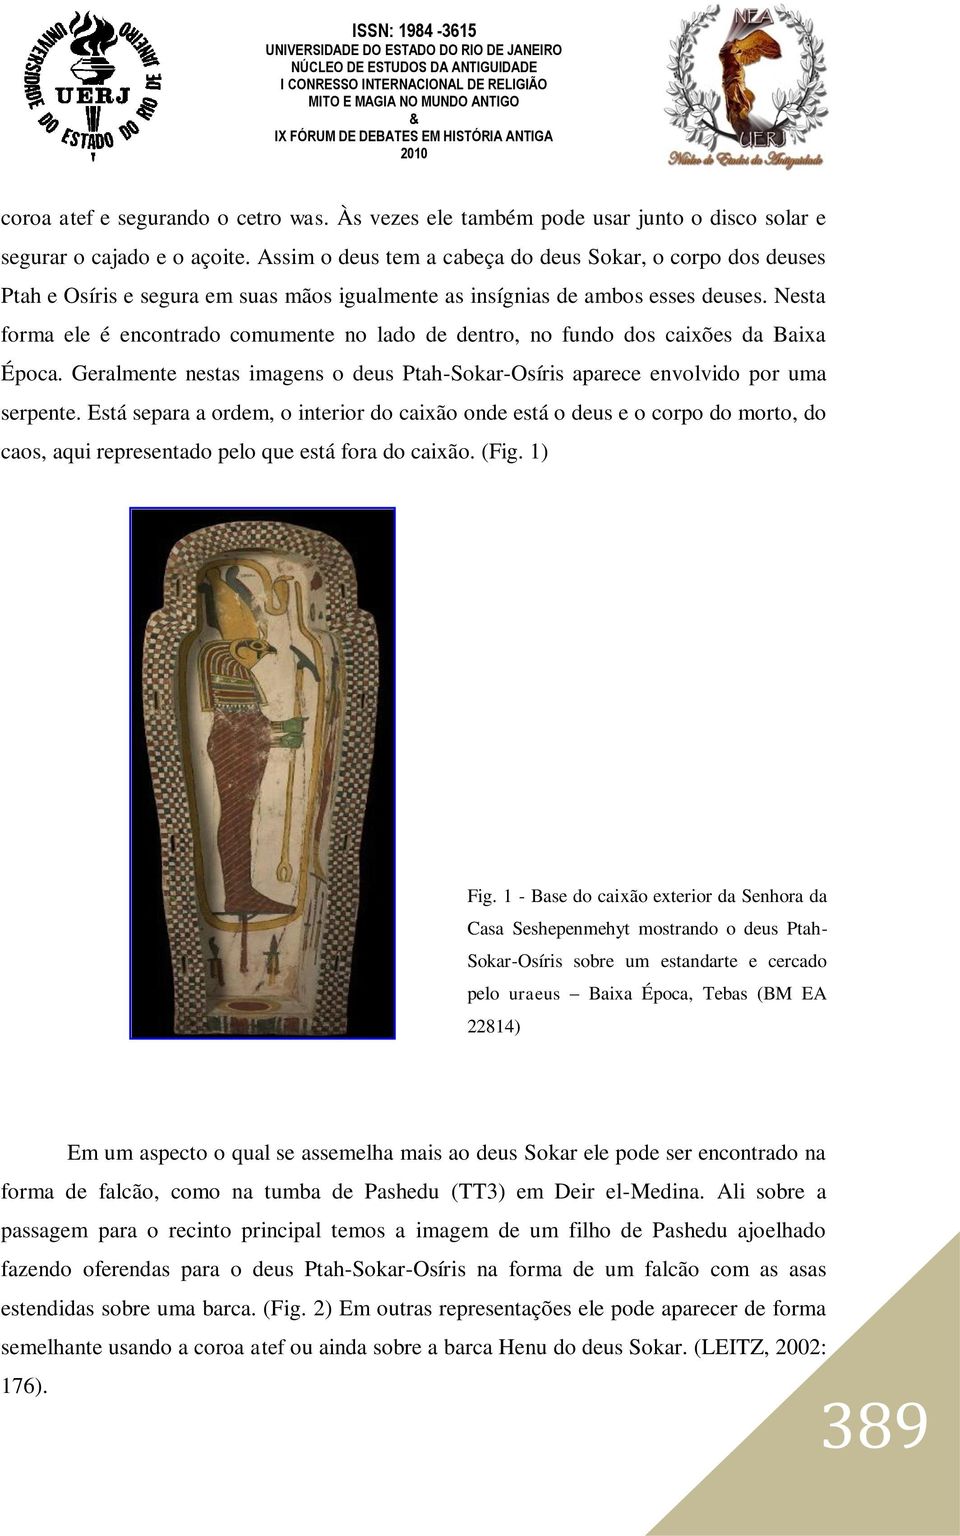 Nesta forma ele é encontrado comumente no lado de dentro, no fundo dos caixões da Baixa Época. Geralmente nestas imagens o deus Ptah-Sokar-Osíris aparece envolvido por uma serpente.